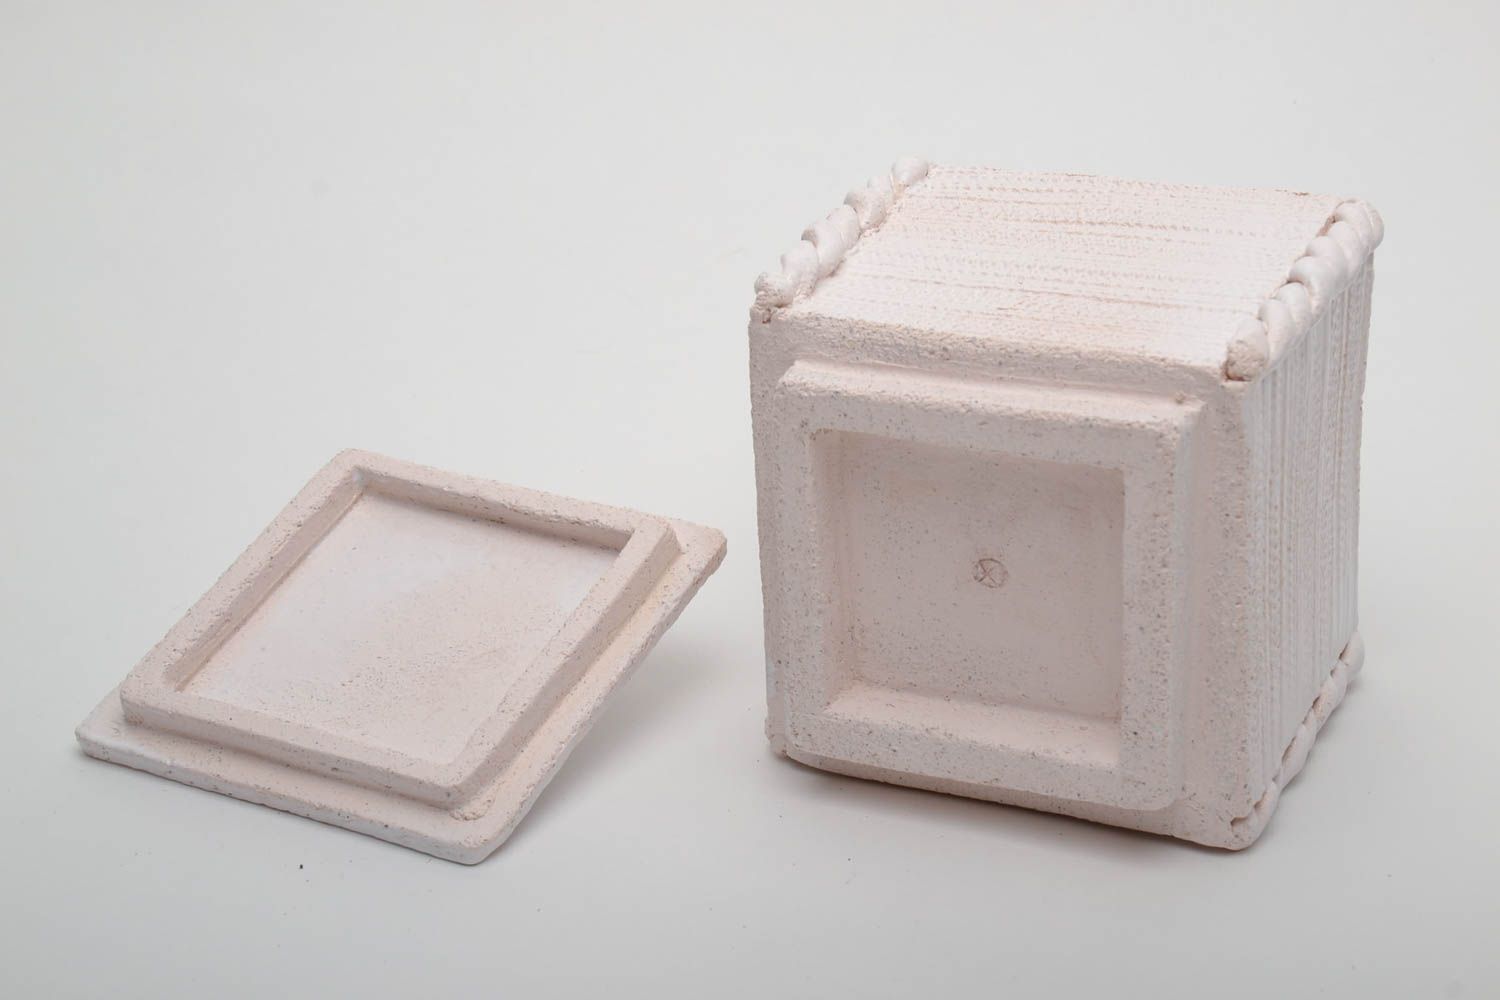 Square ceramic jewelry box of white color photo 4